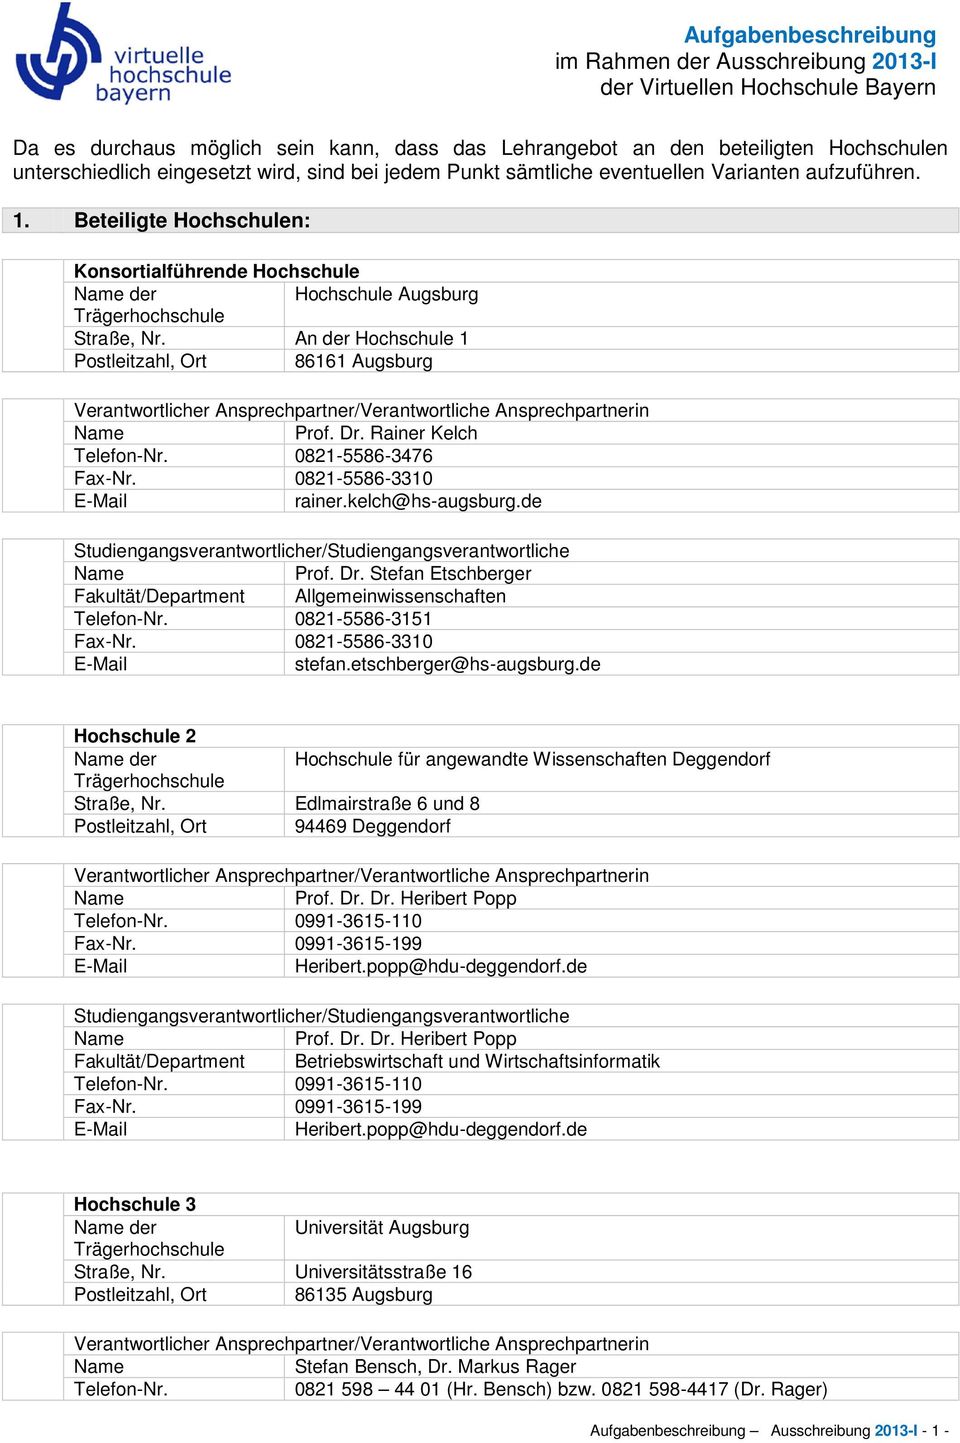 An der Hochschule 1 Postleitzahl, Ort 86161 Augsburg Verantwortlicher Ansprechpartner/Verantwortliche Ansprechpartnerin Prof. Dr. Rainer Kelch Telefon-Nr. 0821-5586-3476 Fax-Nr. 0821-5586-3310 rainer.